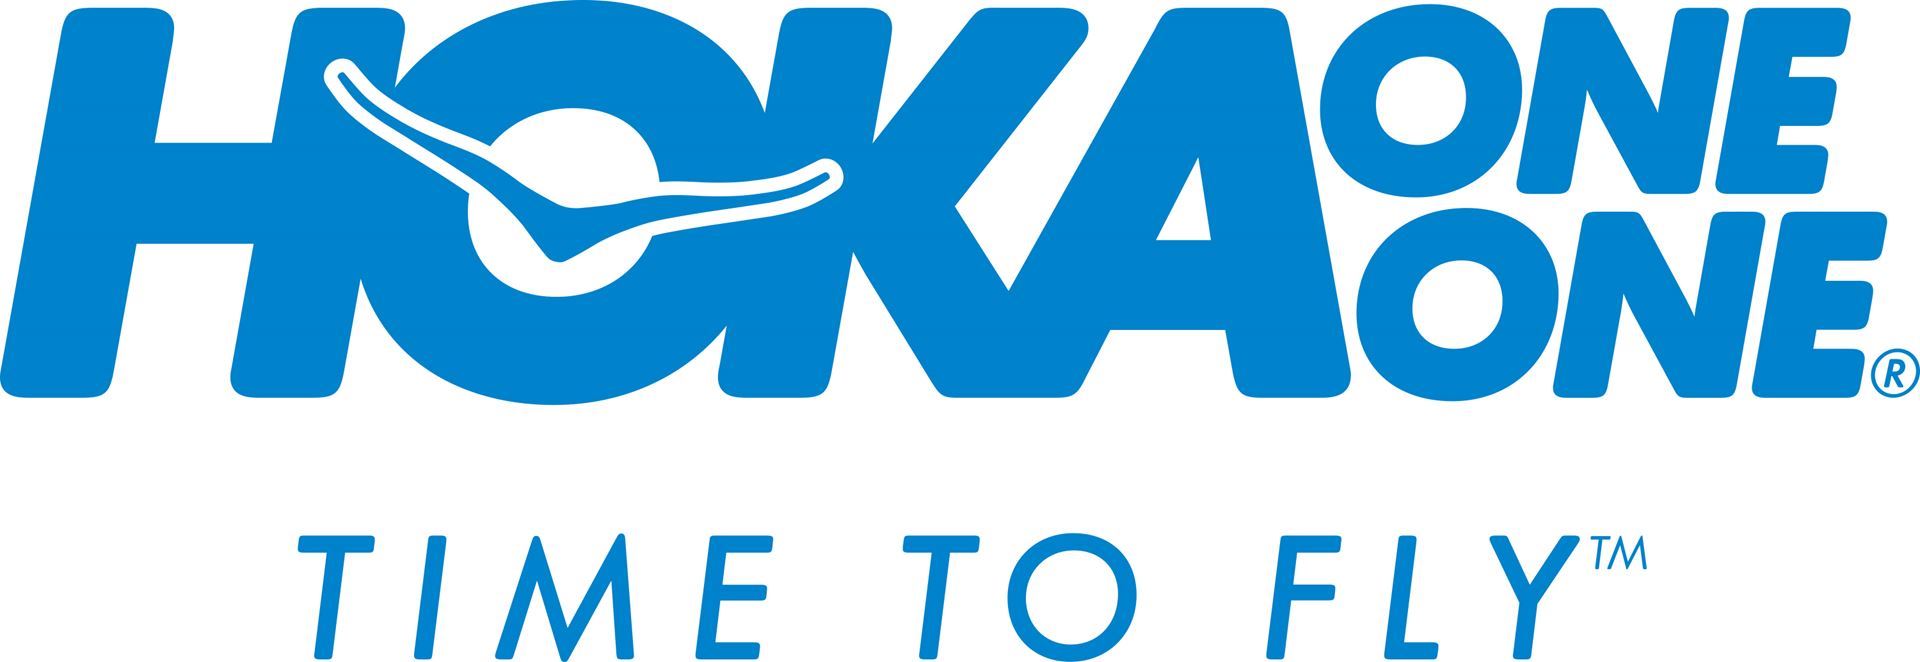 HOKA Logo